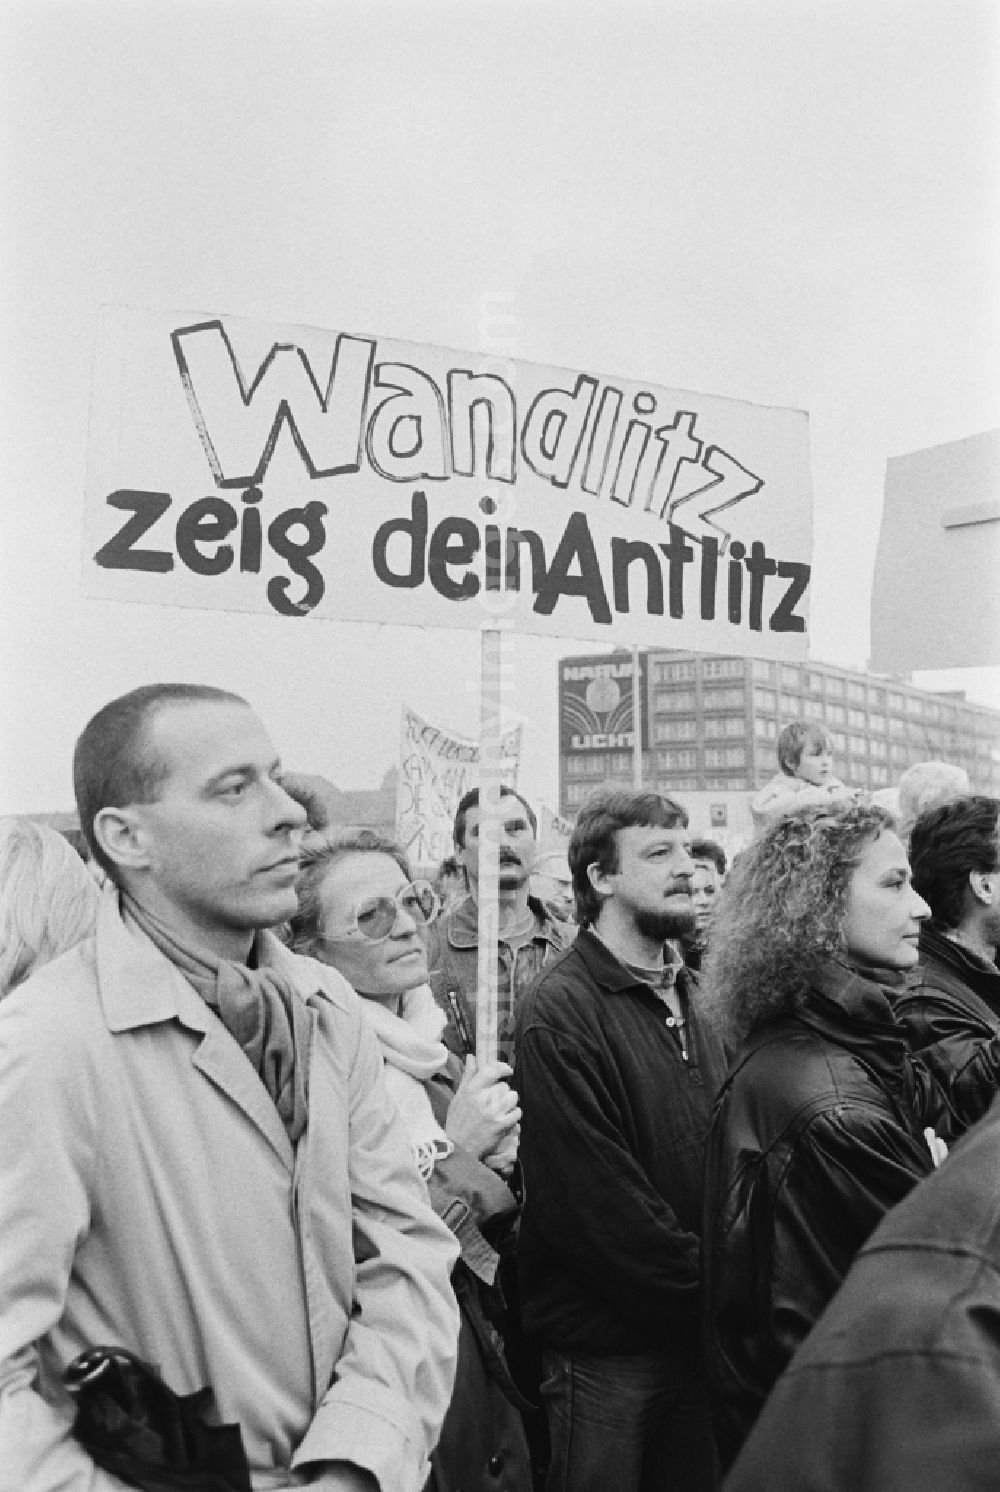 GDR image archive: Berlin - Plakate mit zum Teil sehr originell formulierten politischen Forderungen werden gezeigt. Wandlitz ist die Wohnsiedlung der Mitglieder des Politbüros des ZK der SED. Berlin erlebt am